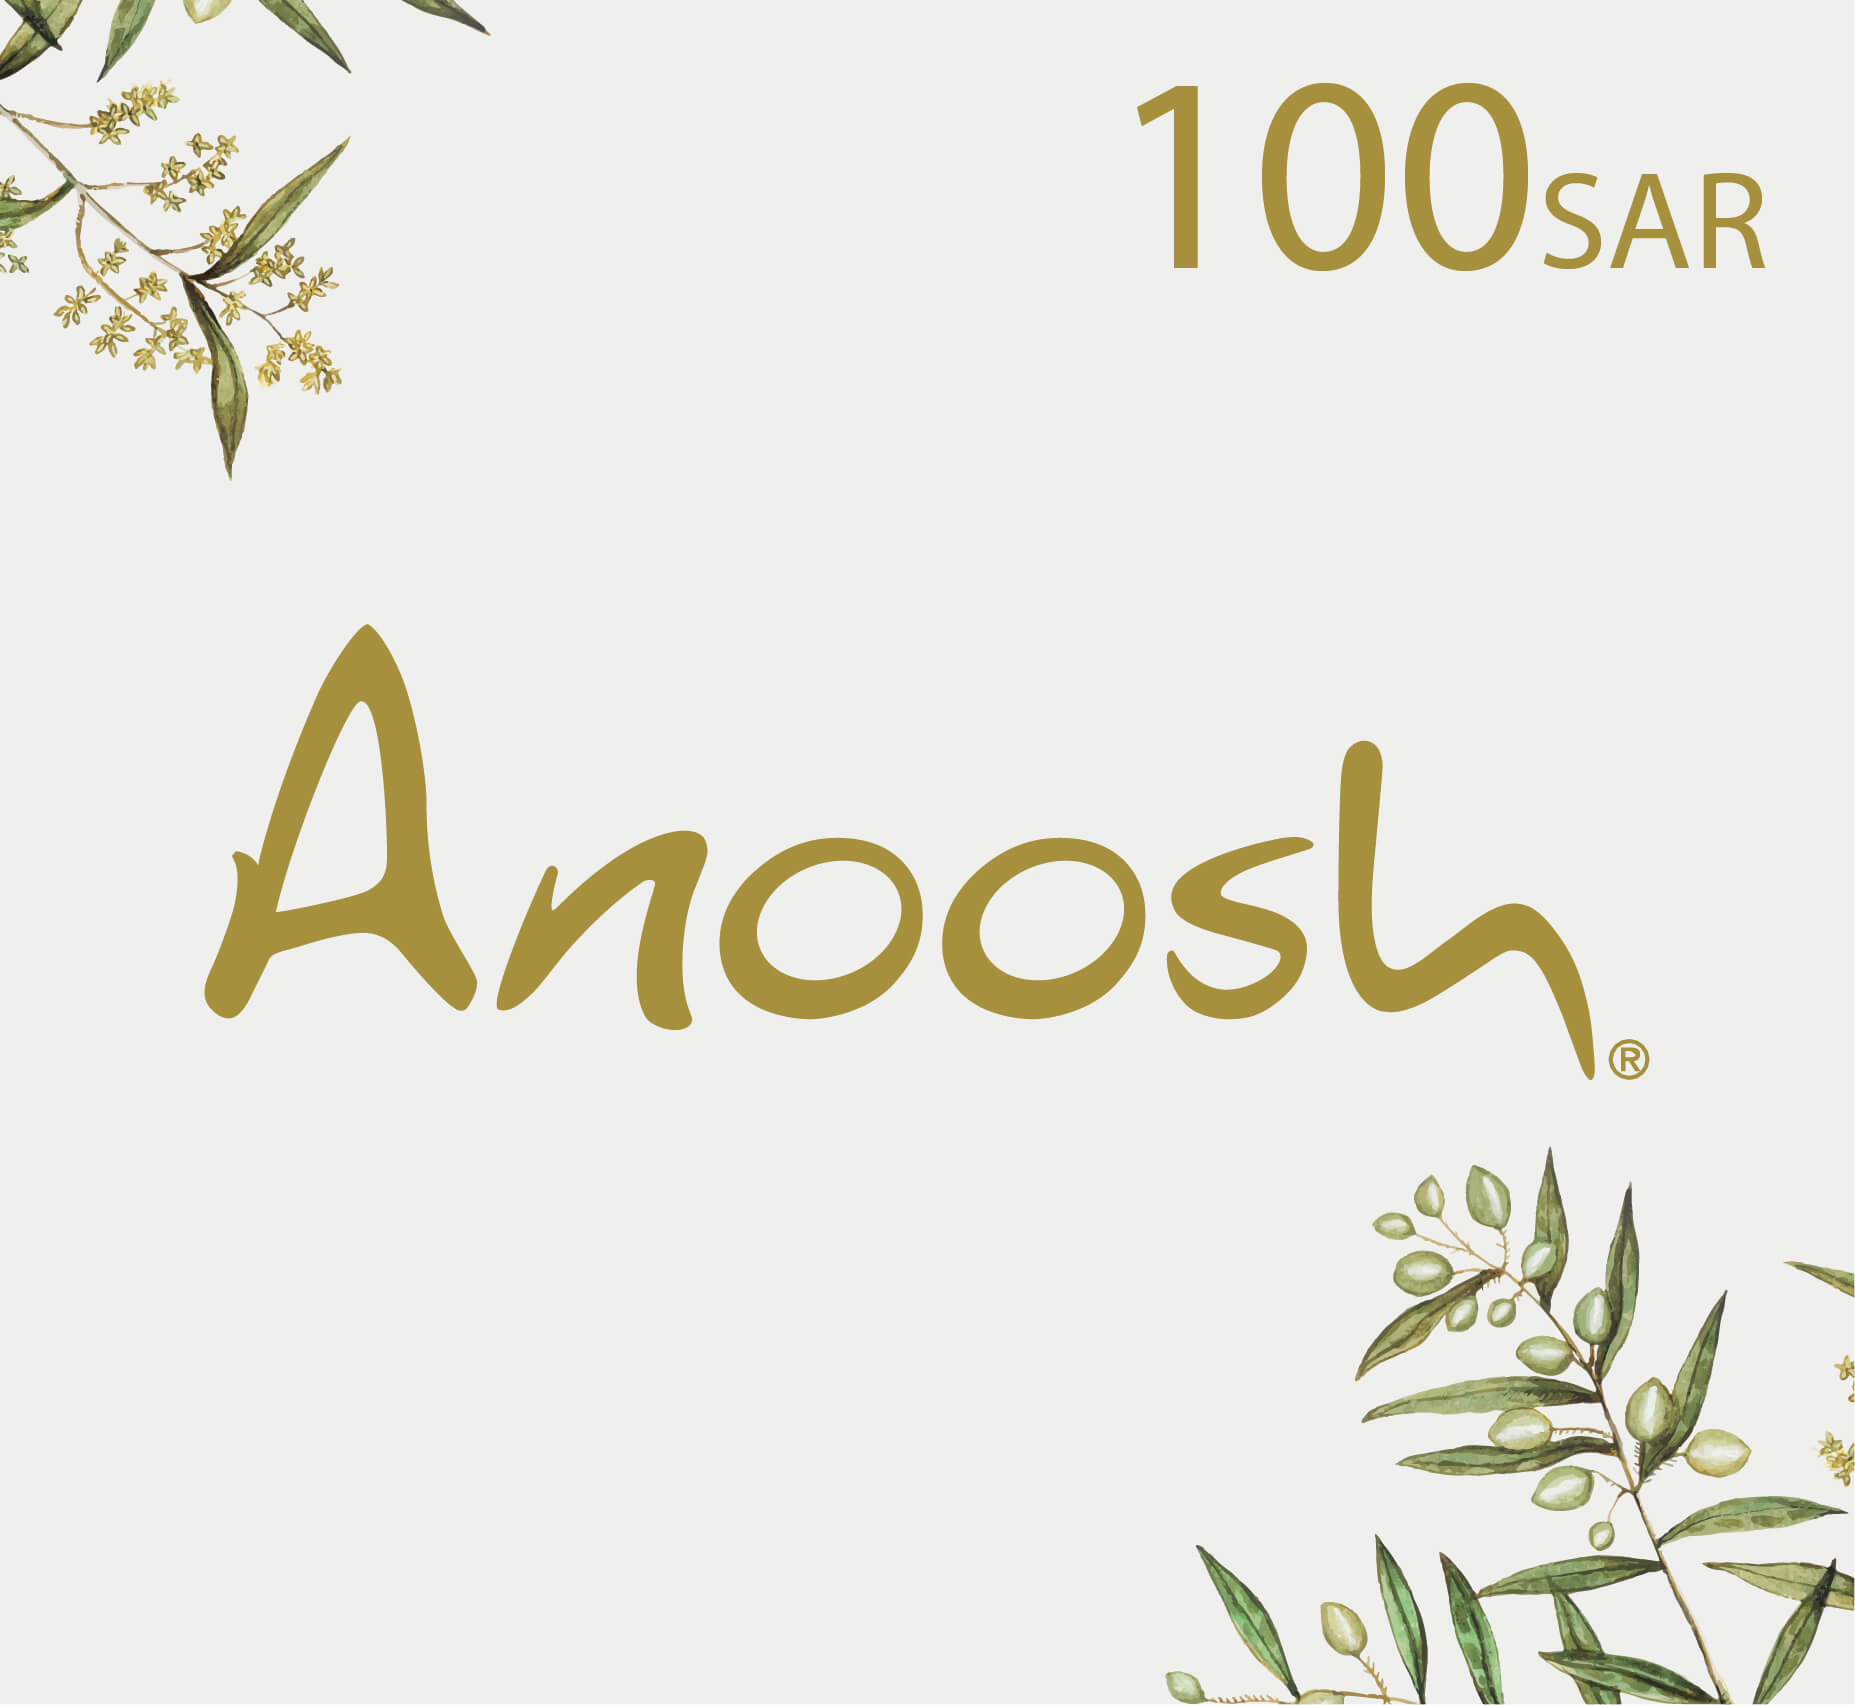 Anoosh Gift Card - 100 SAR